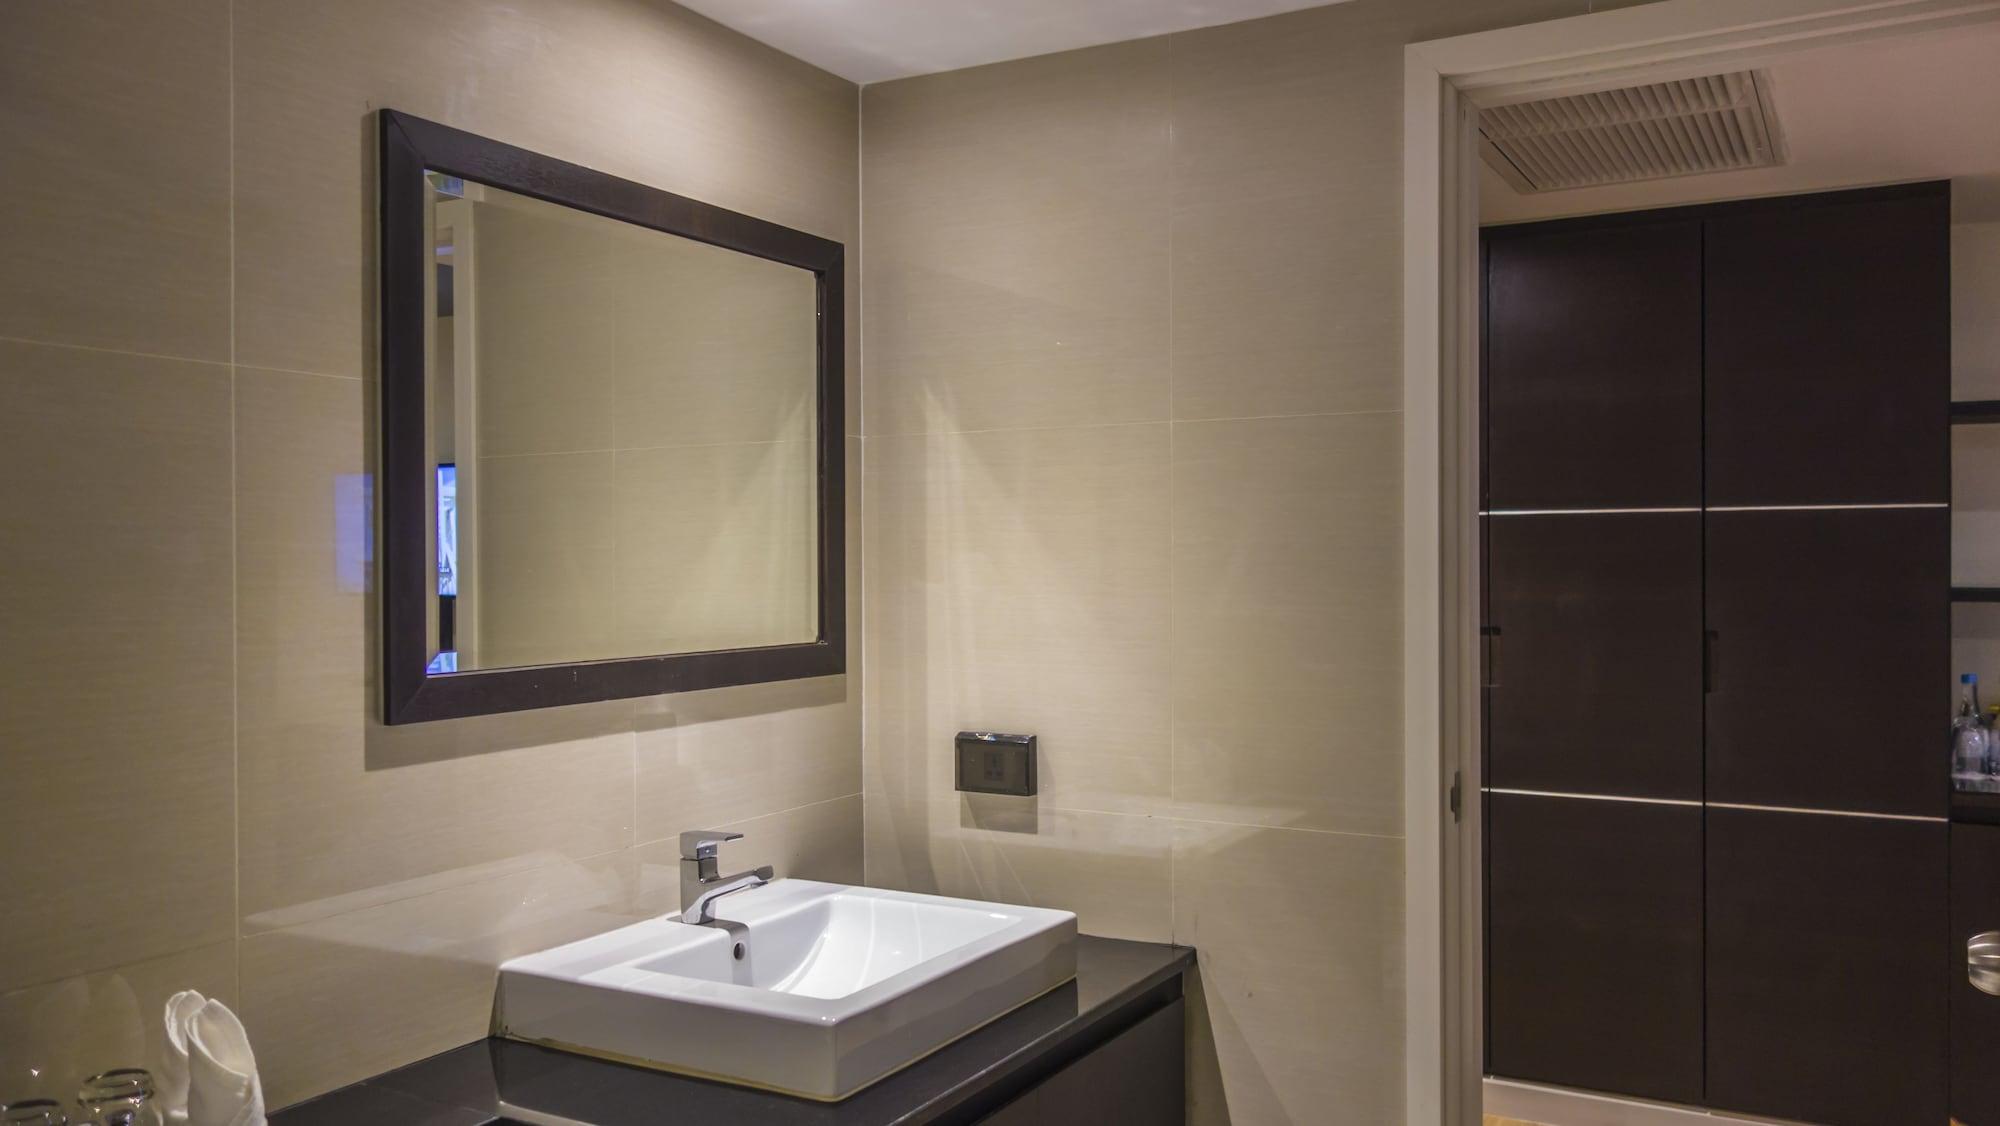 Unique regency hotel. Зеркало в ванную в стальной раме.